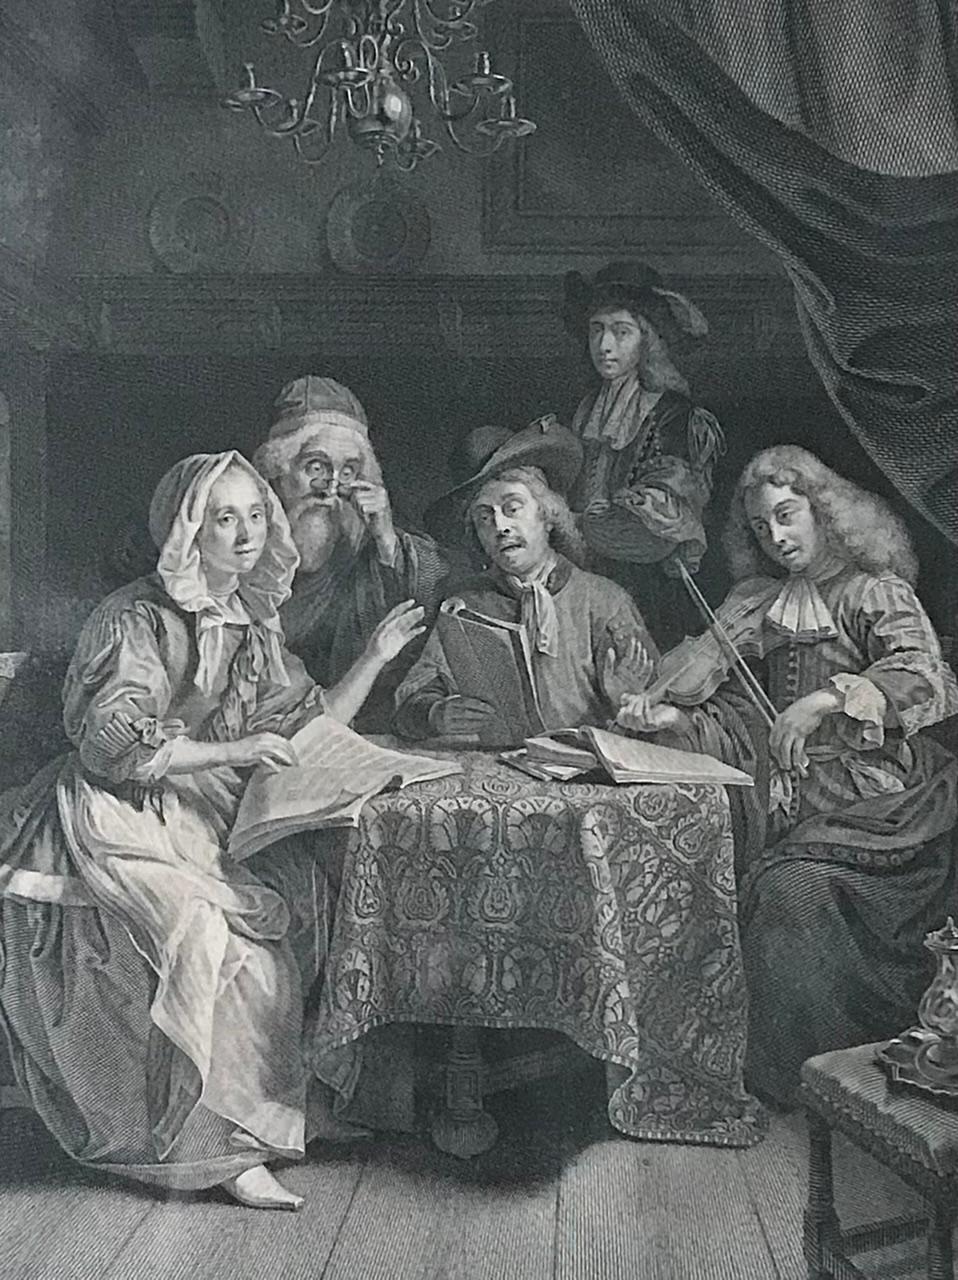 Es handelt sich um einen Kupferstich von Johann Georg Wille nach einem Werk von Godfried Schalcken. 
 
Dies ist eine Genreszene. Eine Familie sitzt um einen Tisch in einem typischen Interieur des 17. Jahrhunderts. Sie lesen und singen Musik und